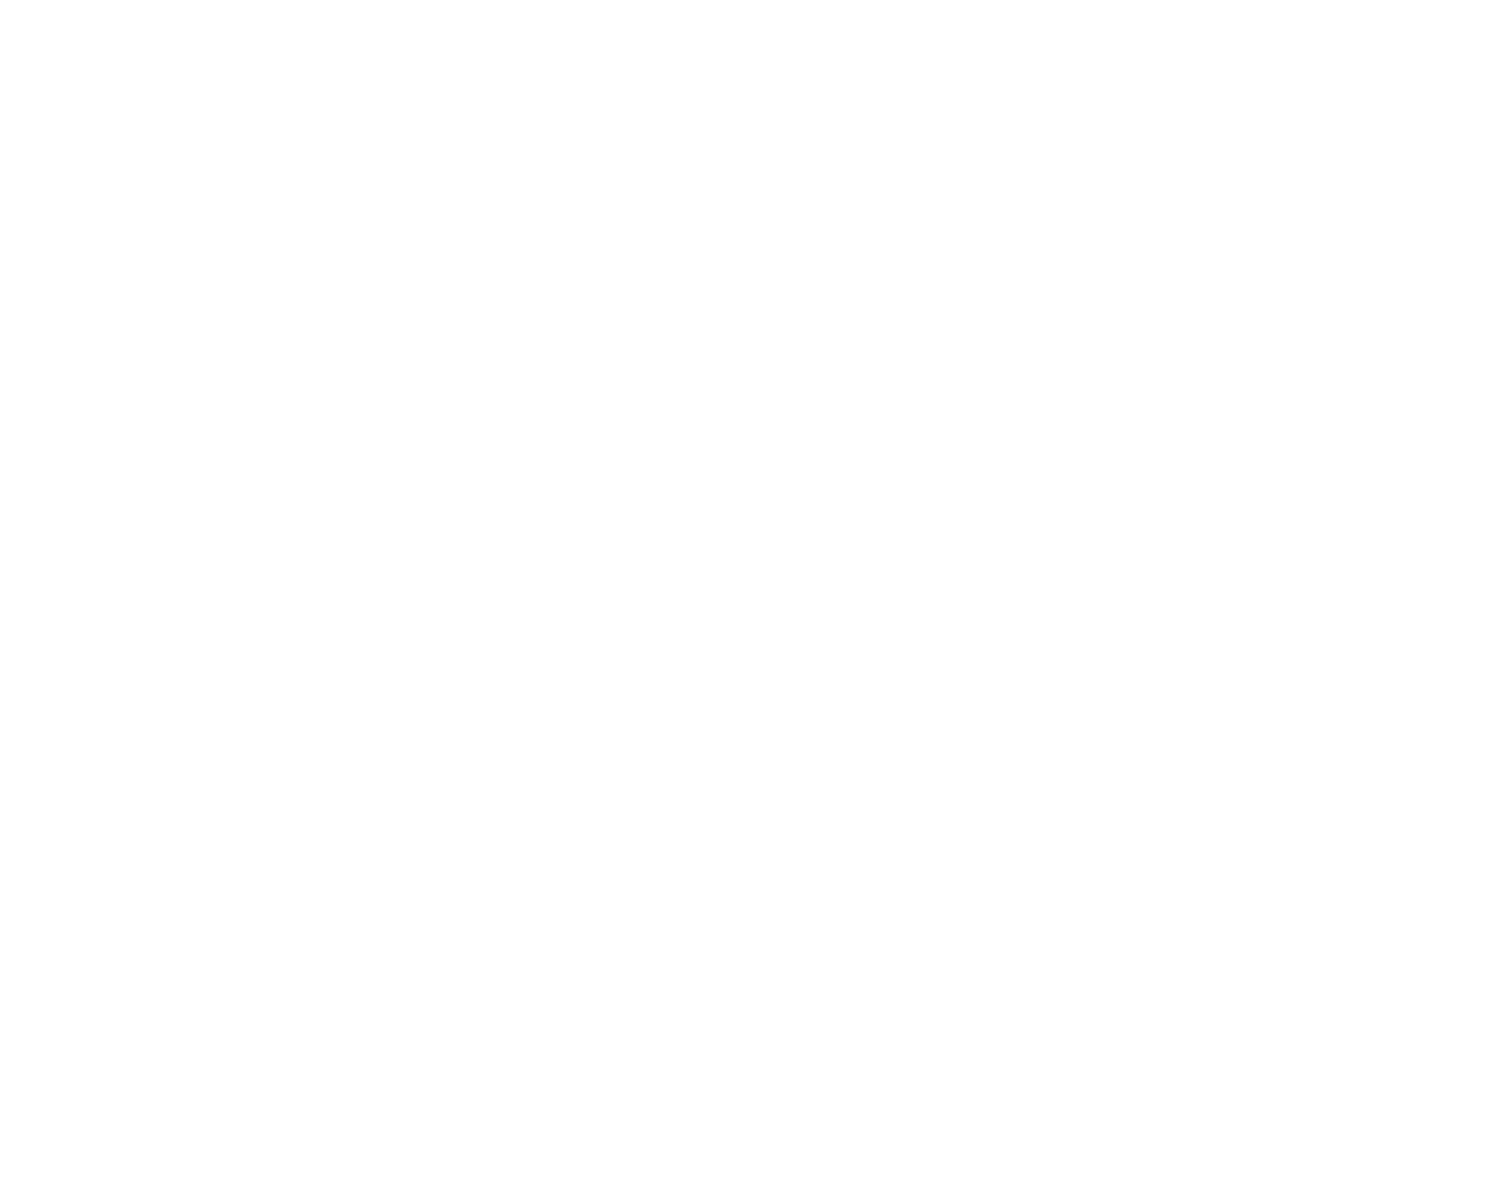 Allen-Forrester Band